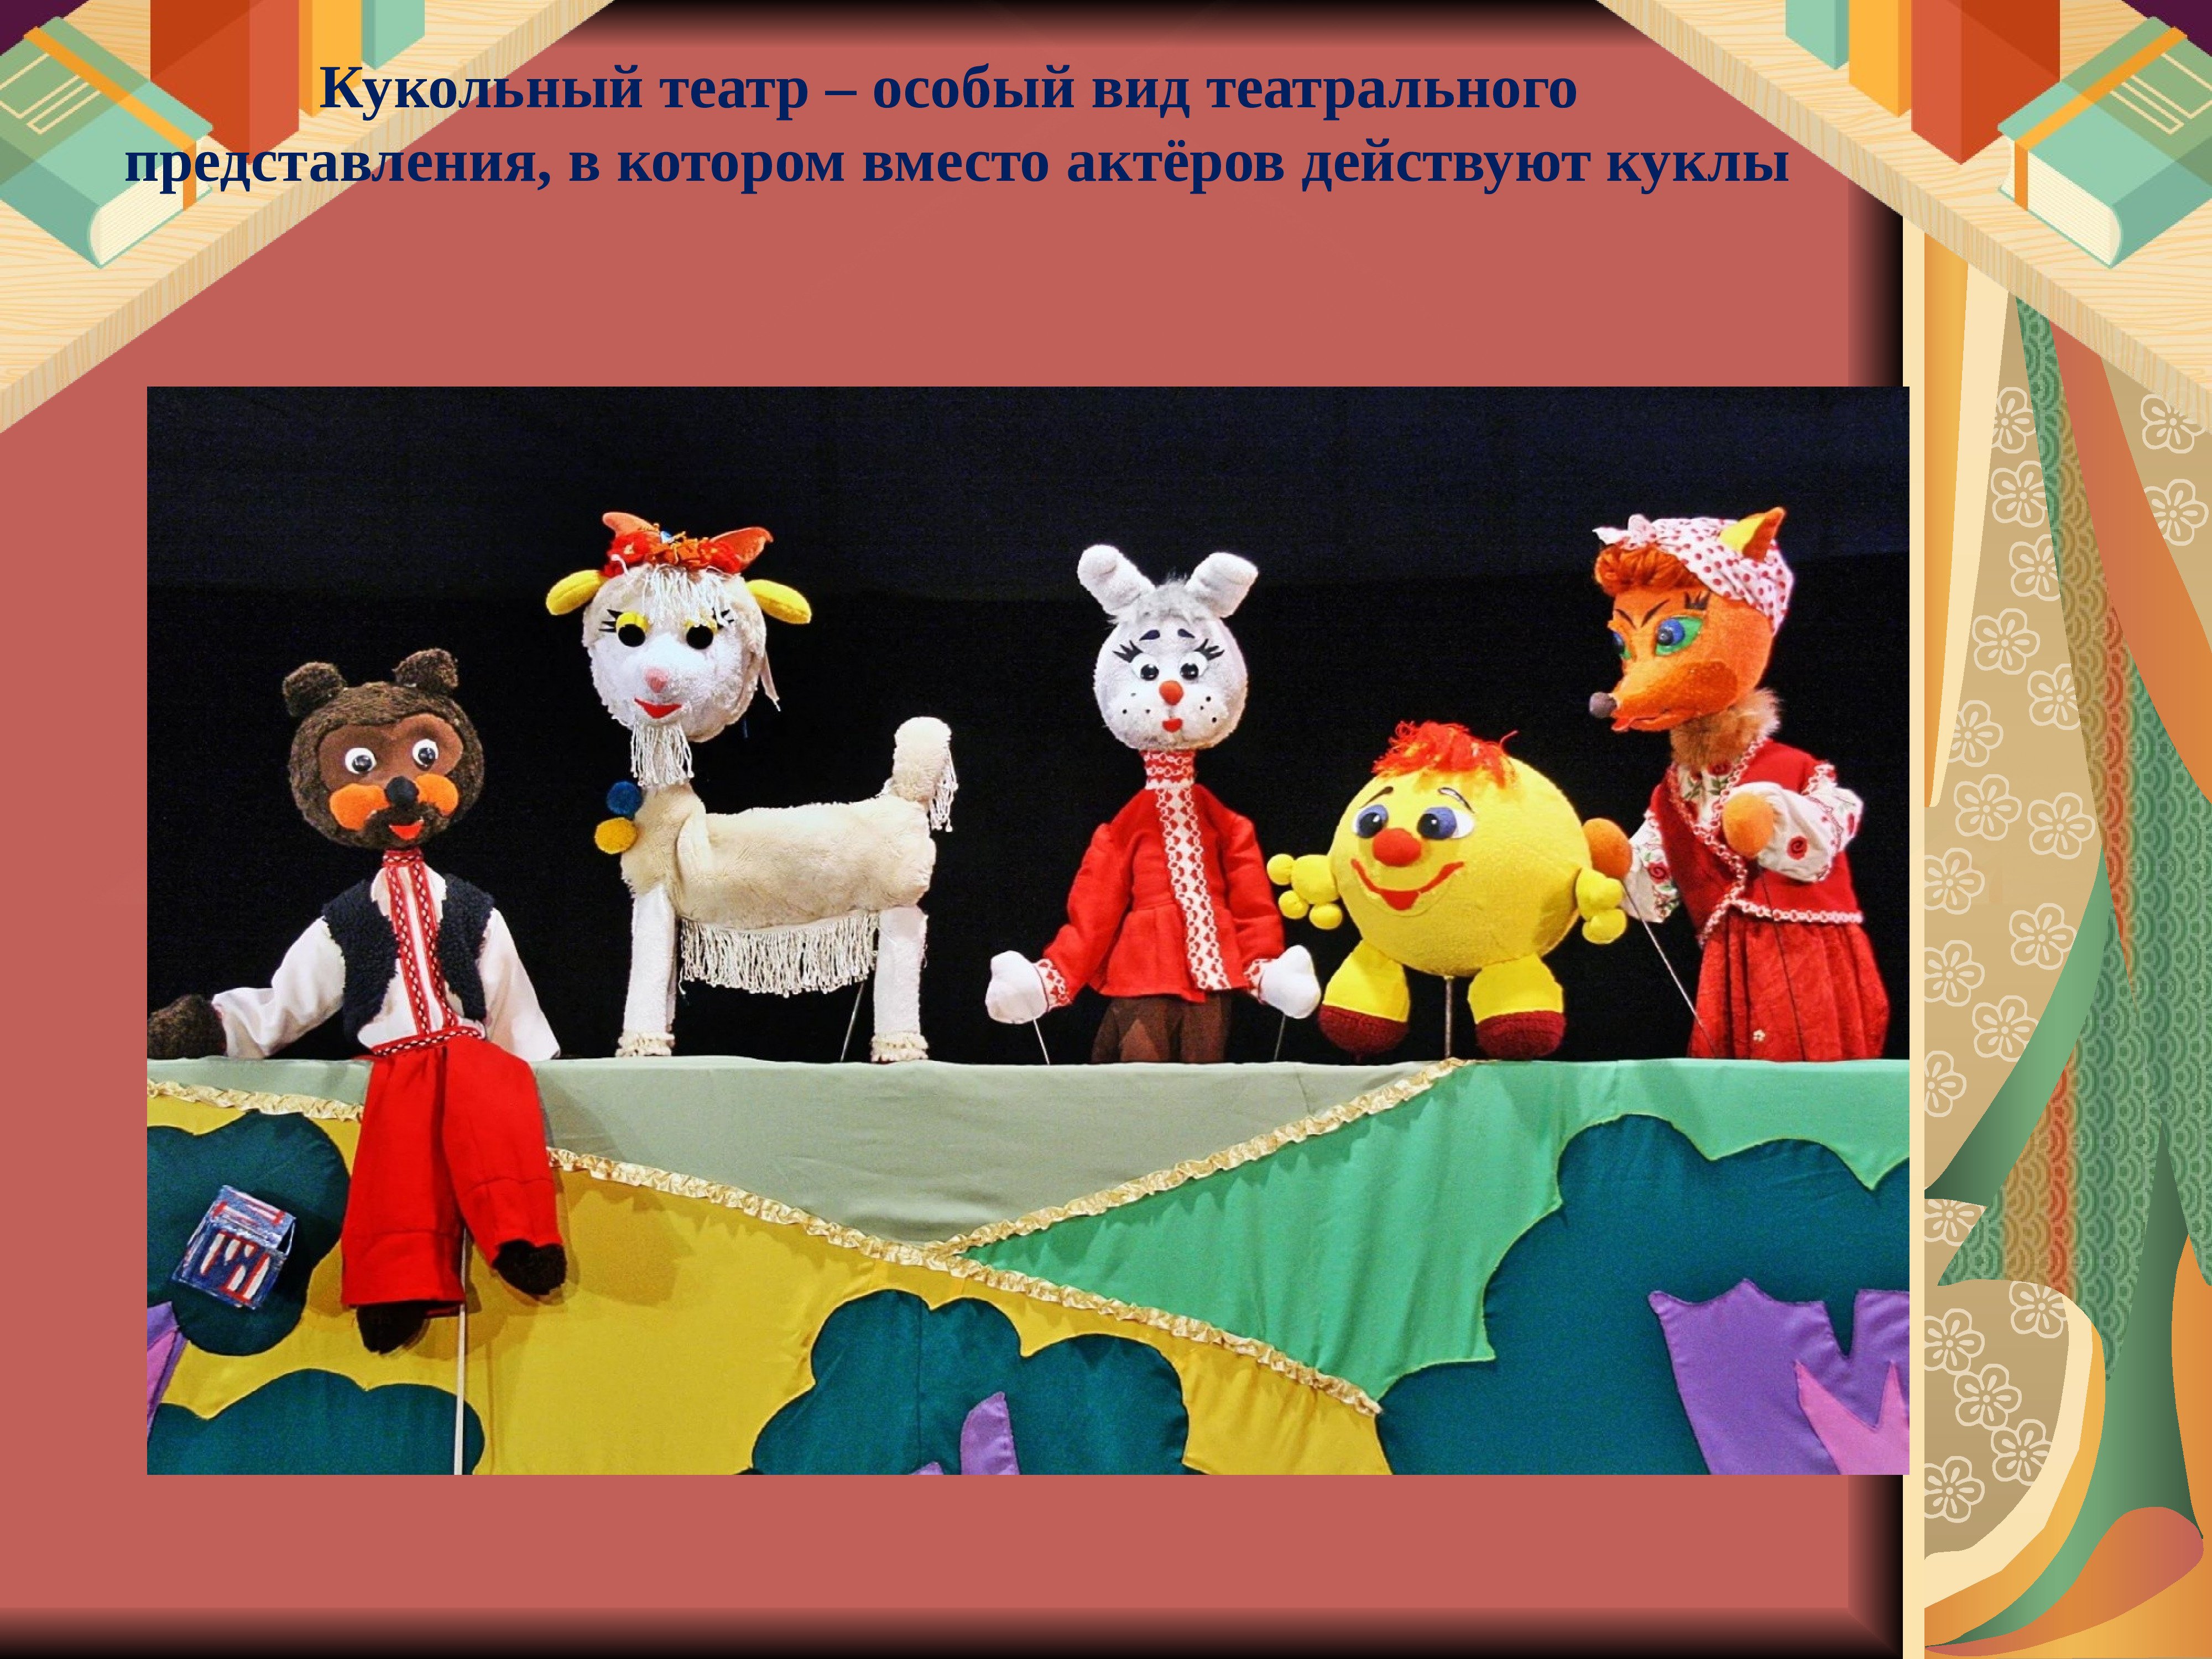 Театрализация в школе. Виды кукольных театров. Театральные куклы бывают. Формы кукольного театра. Кукольный театр представление.